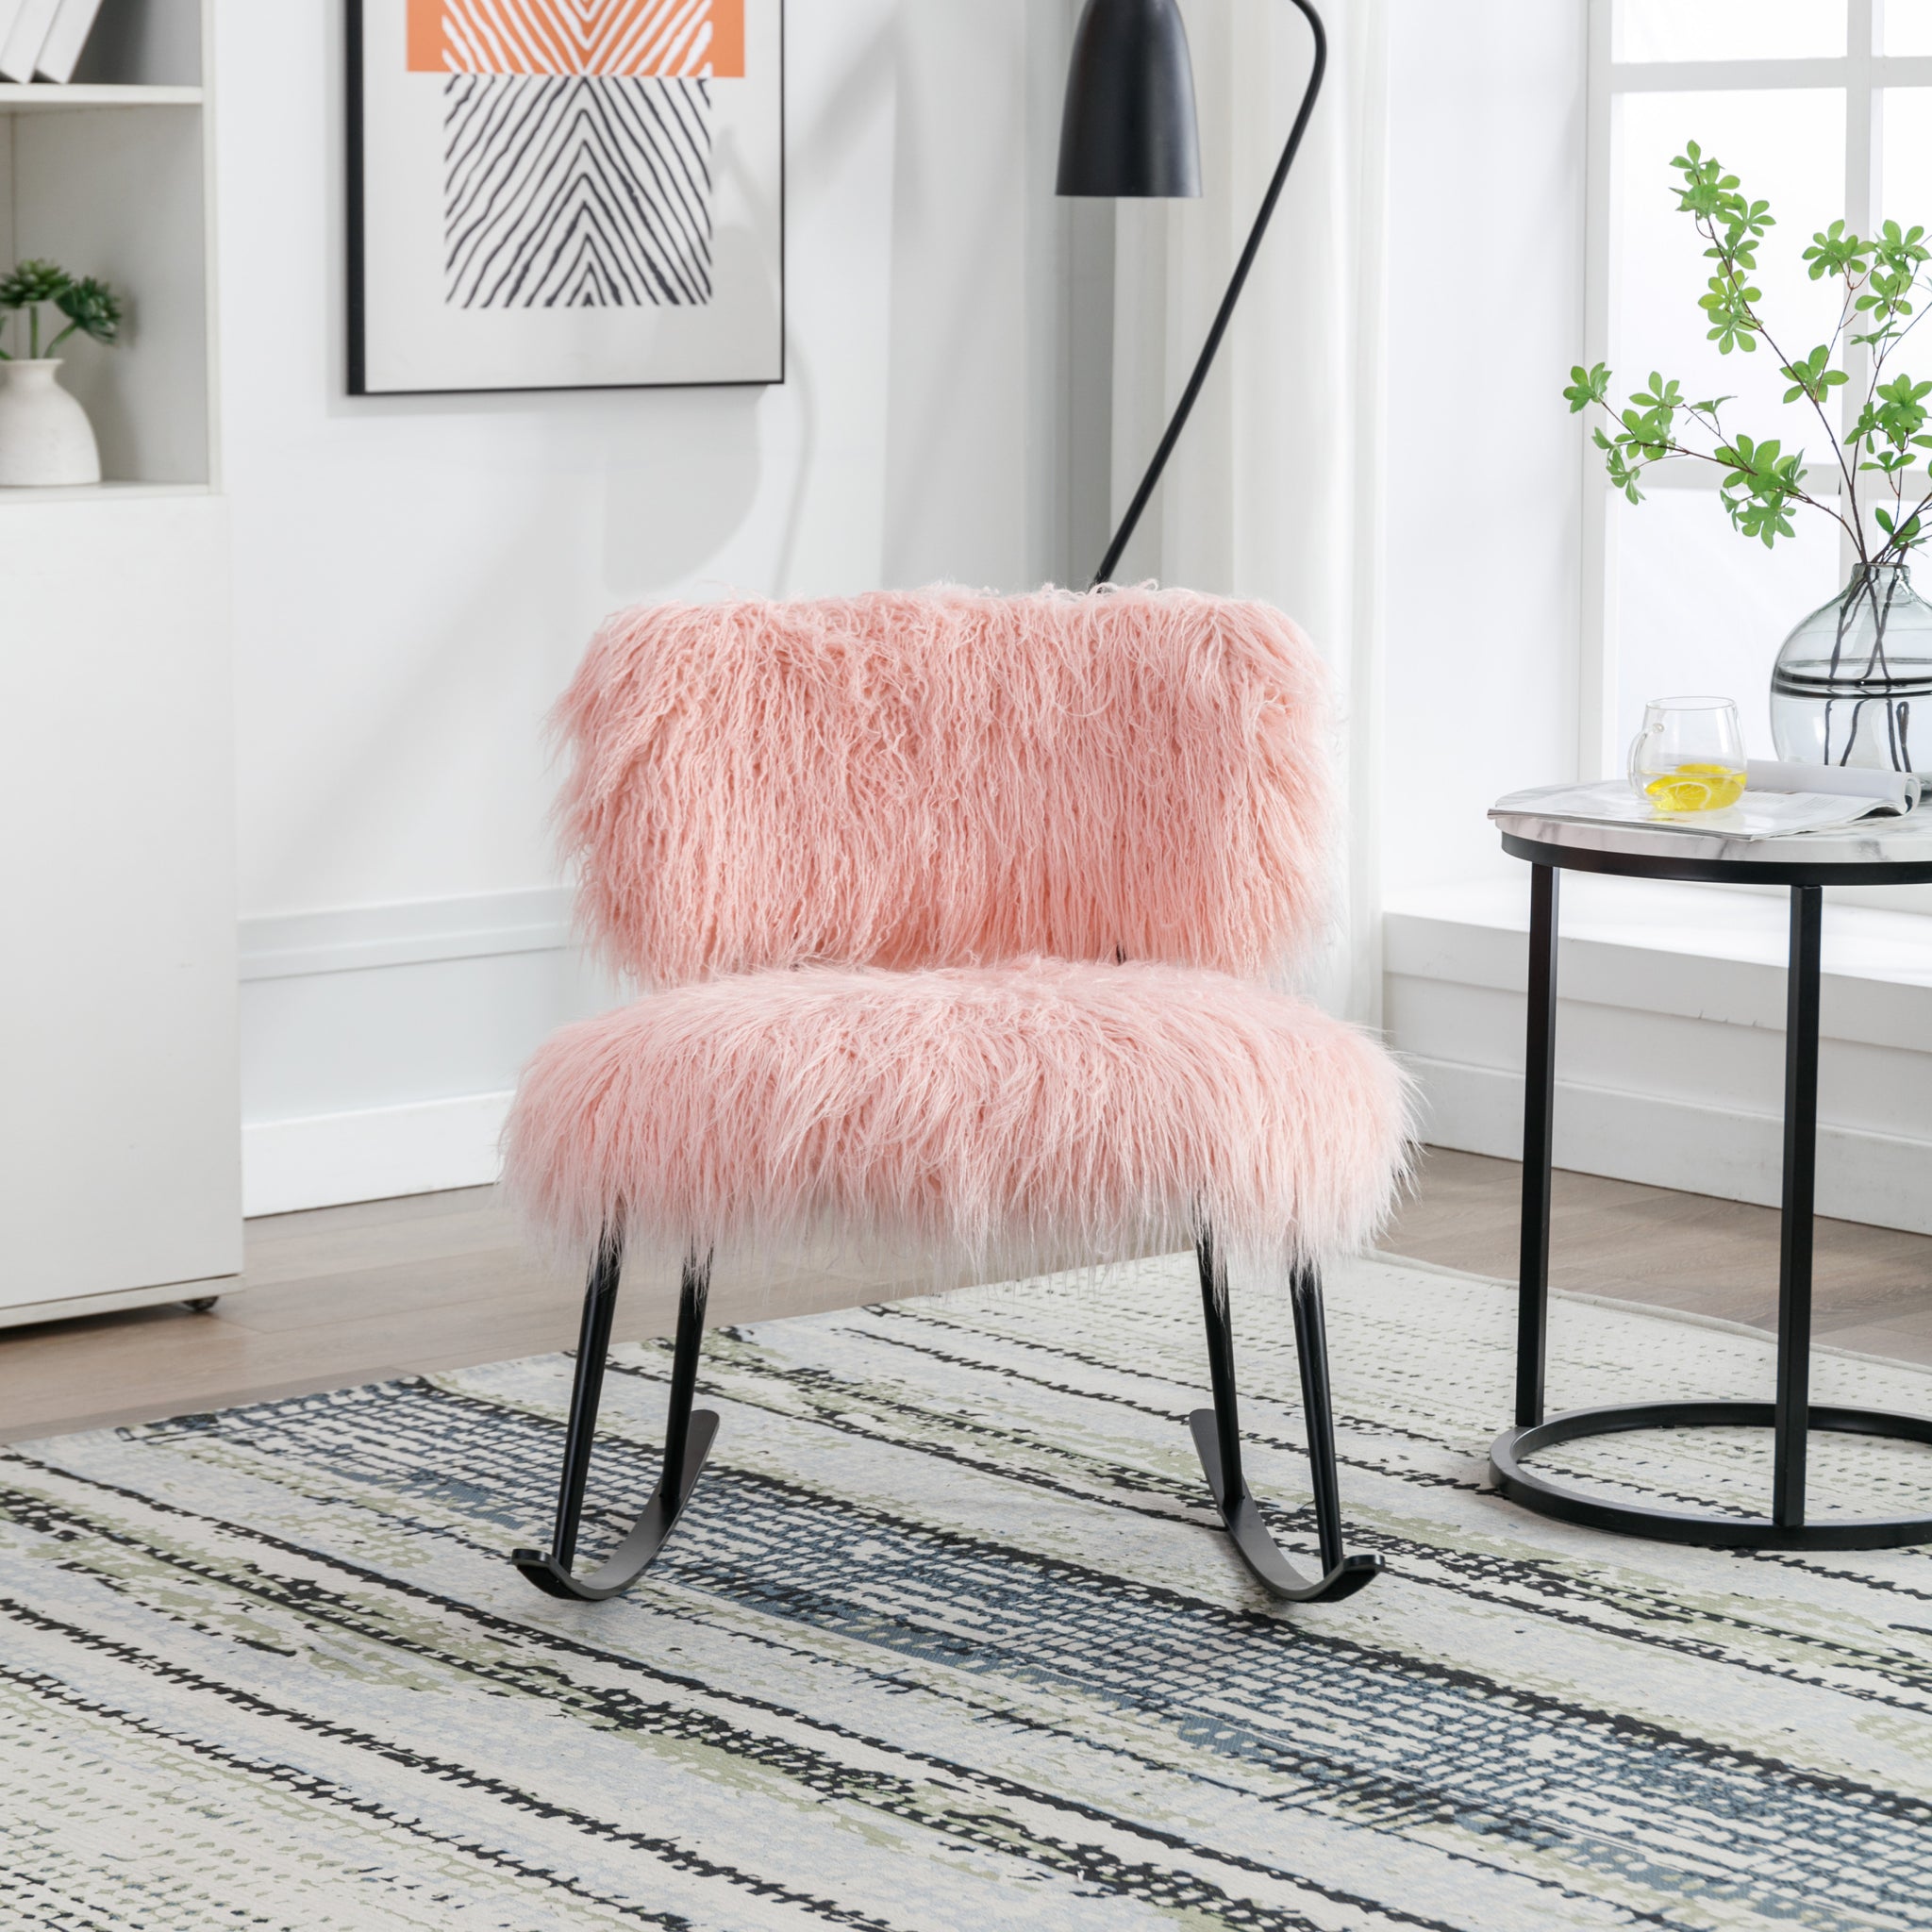 25.2'' Wide Faux Fur Plush Nursery Rocking Chair, Baby pink-foam-faux fur